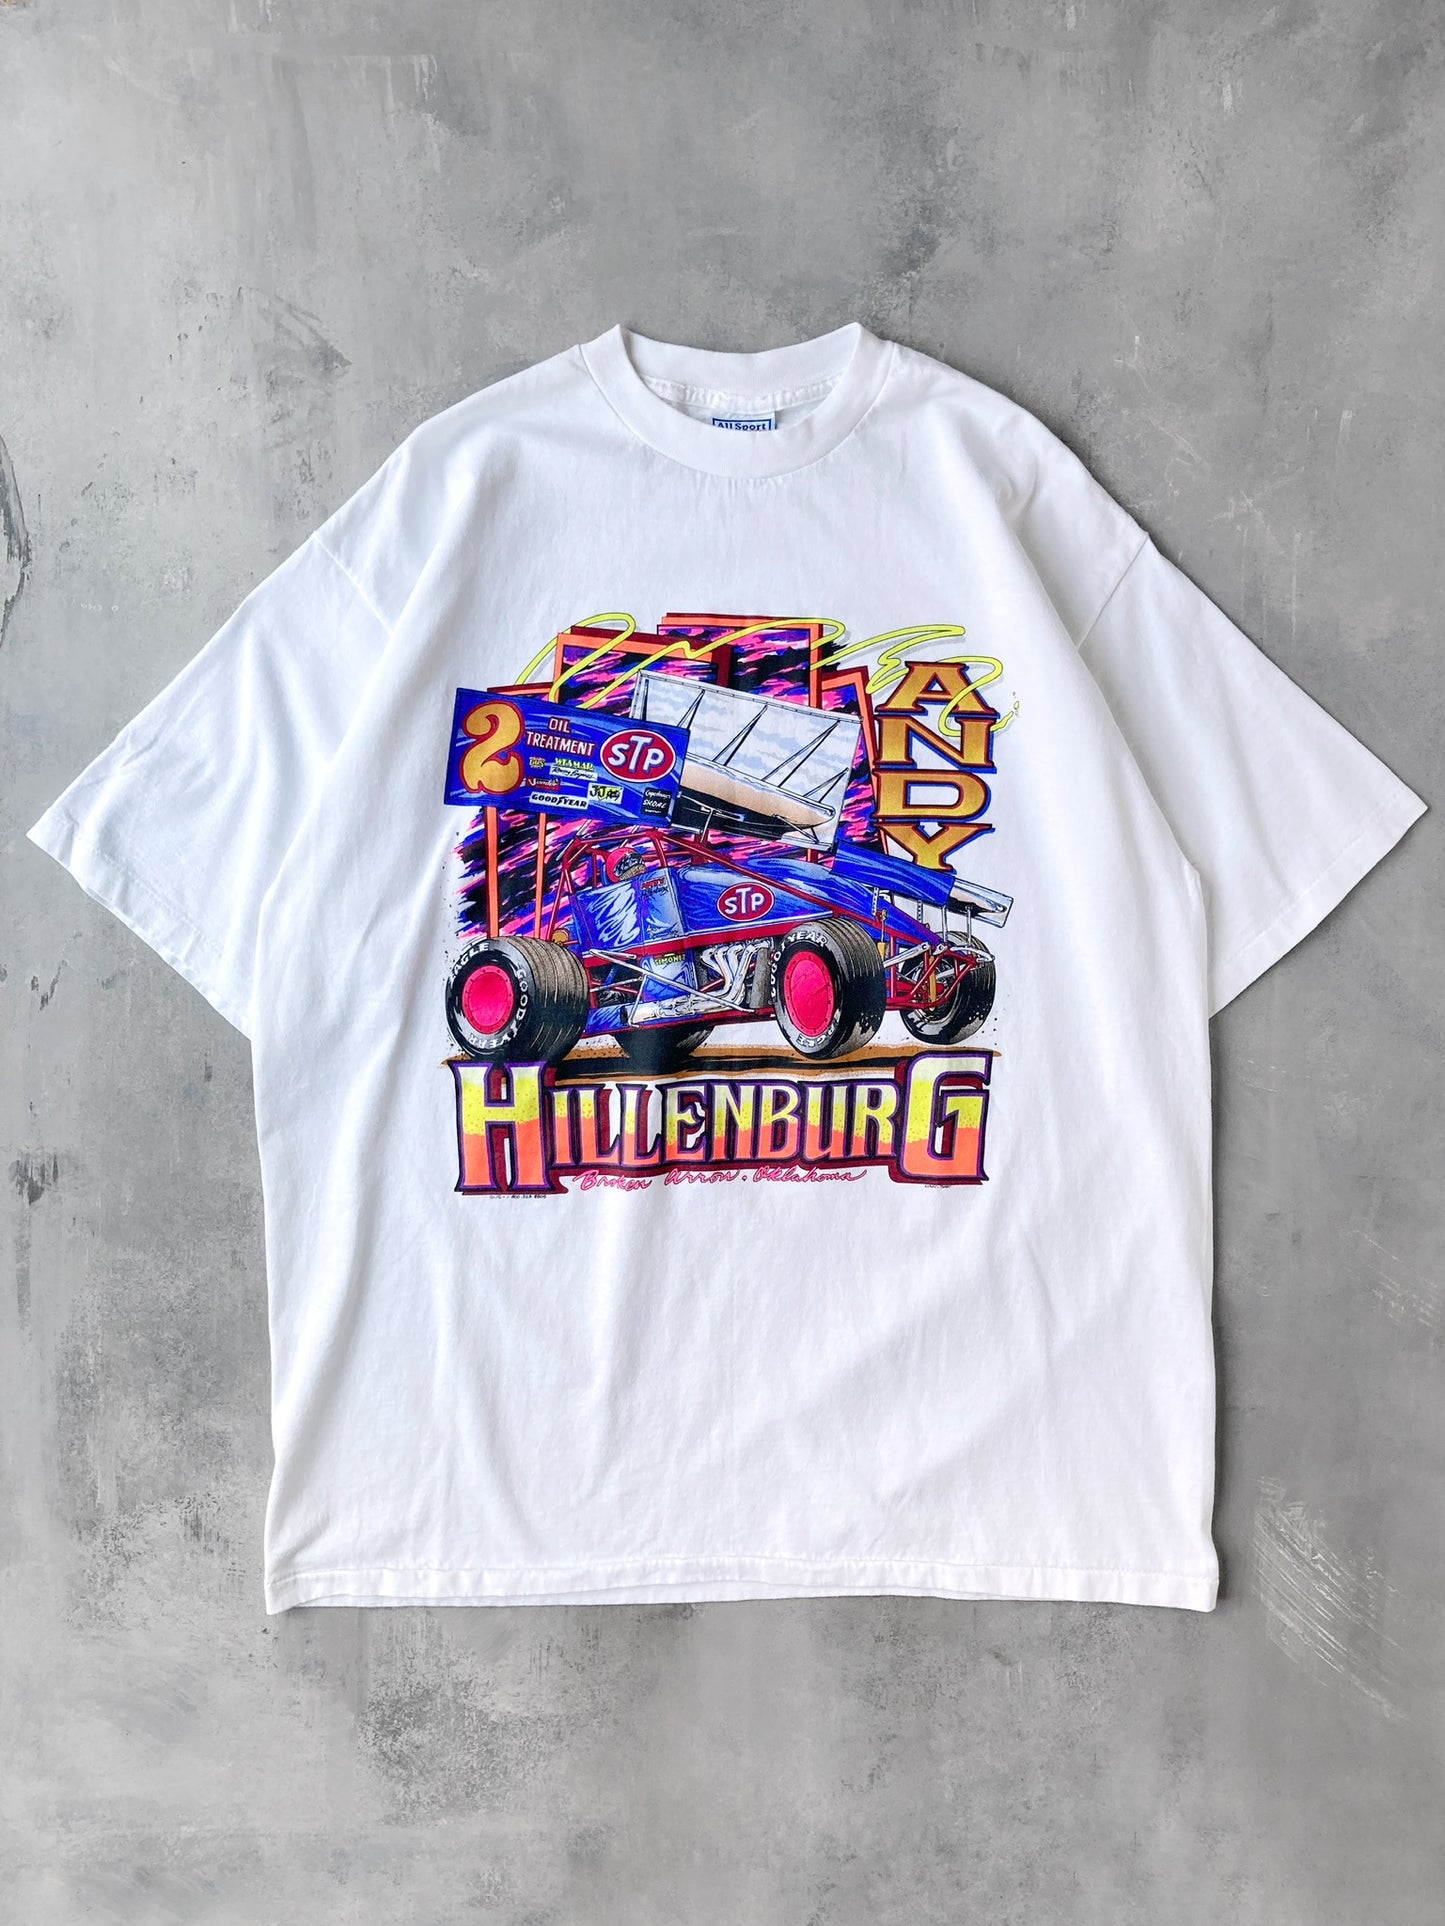 Sprint Racing T-Shirt 90's - XL